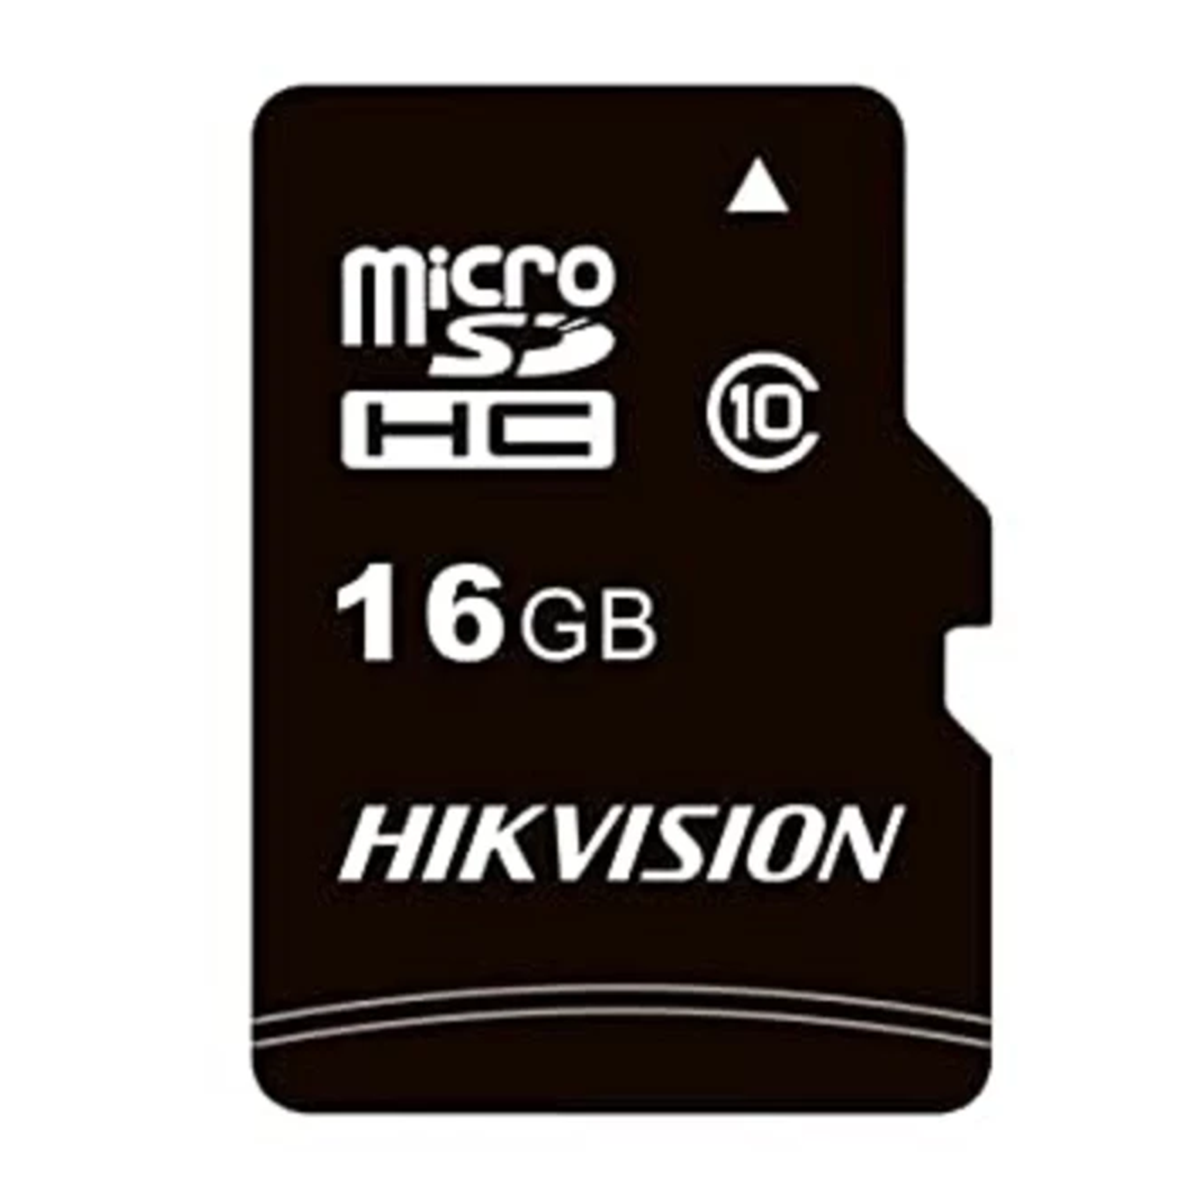 کارت حافظه microSDHC هایک ویژن مدل C1 کلاس 10 استاندارد UHS-I سرعت 92MBps ظرفیت 16 گیگابایت-small-image